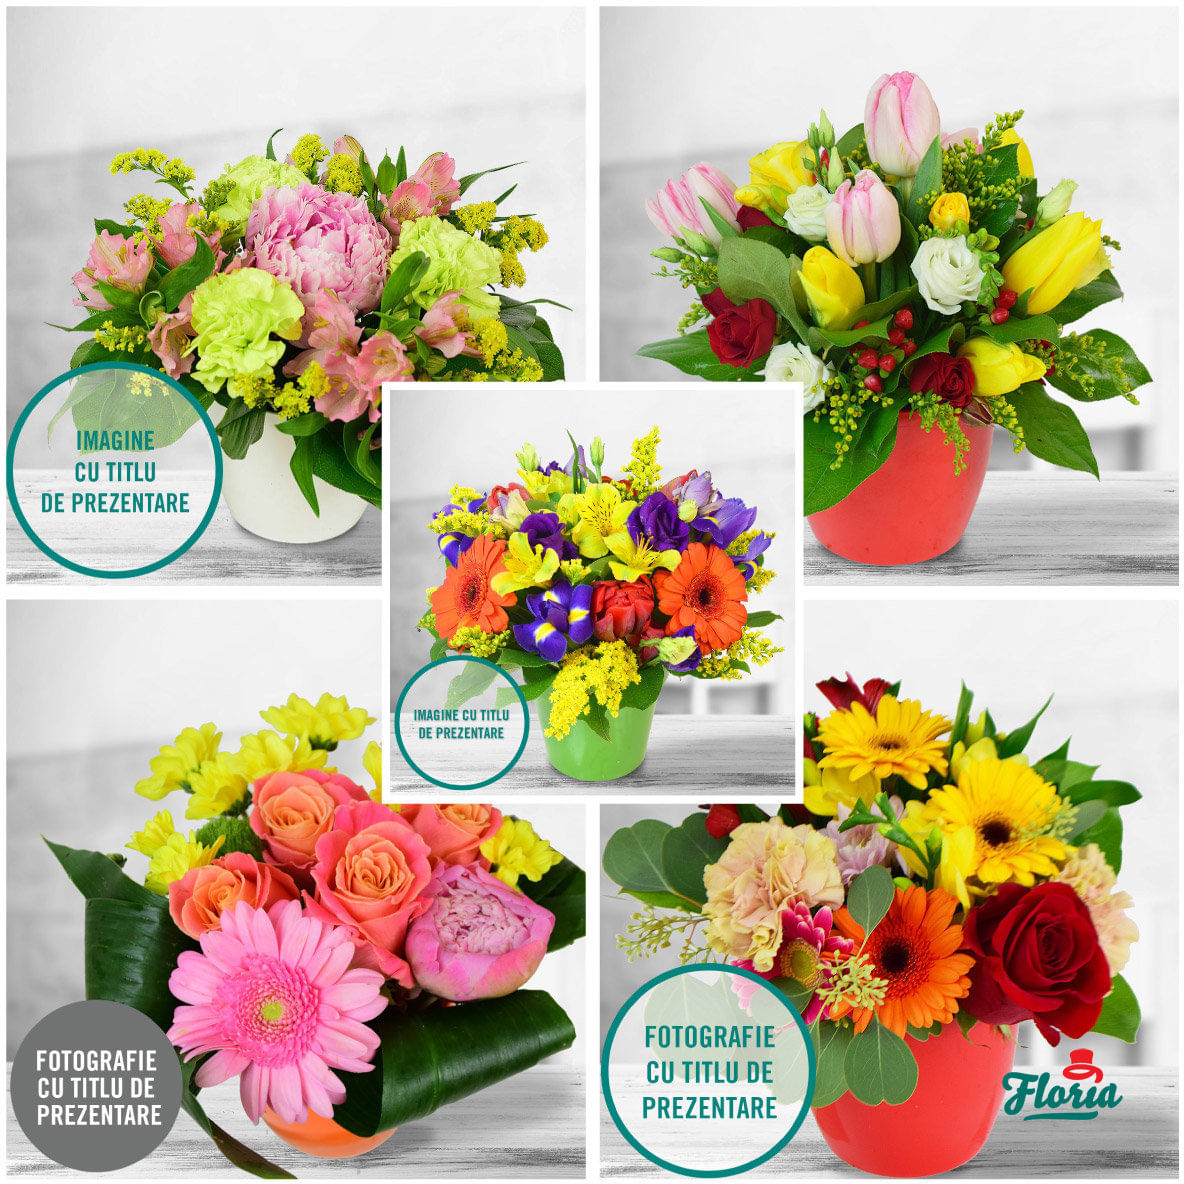 Abonament floral – In fiecare saptamana alta idee floria.ro